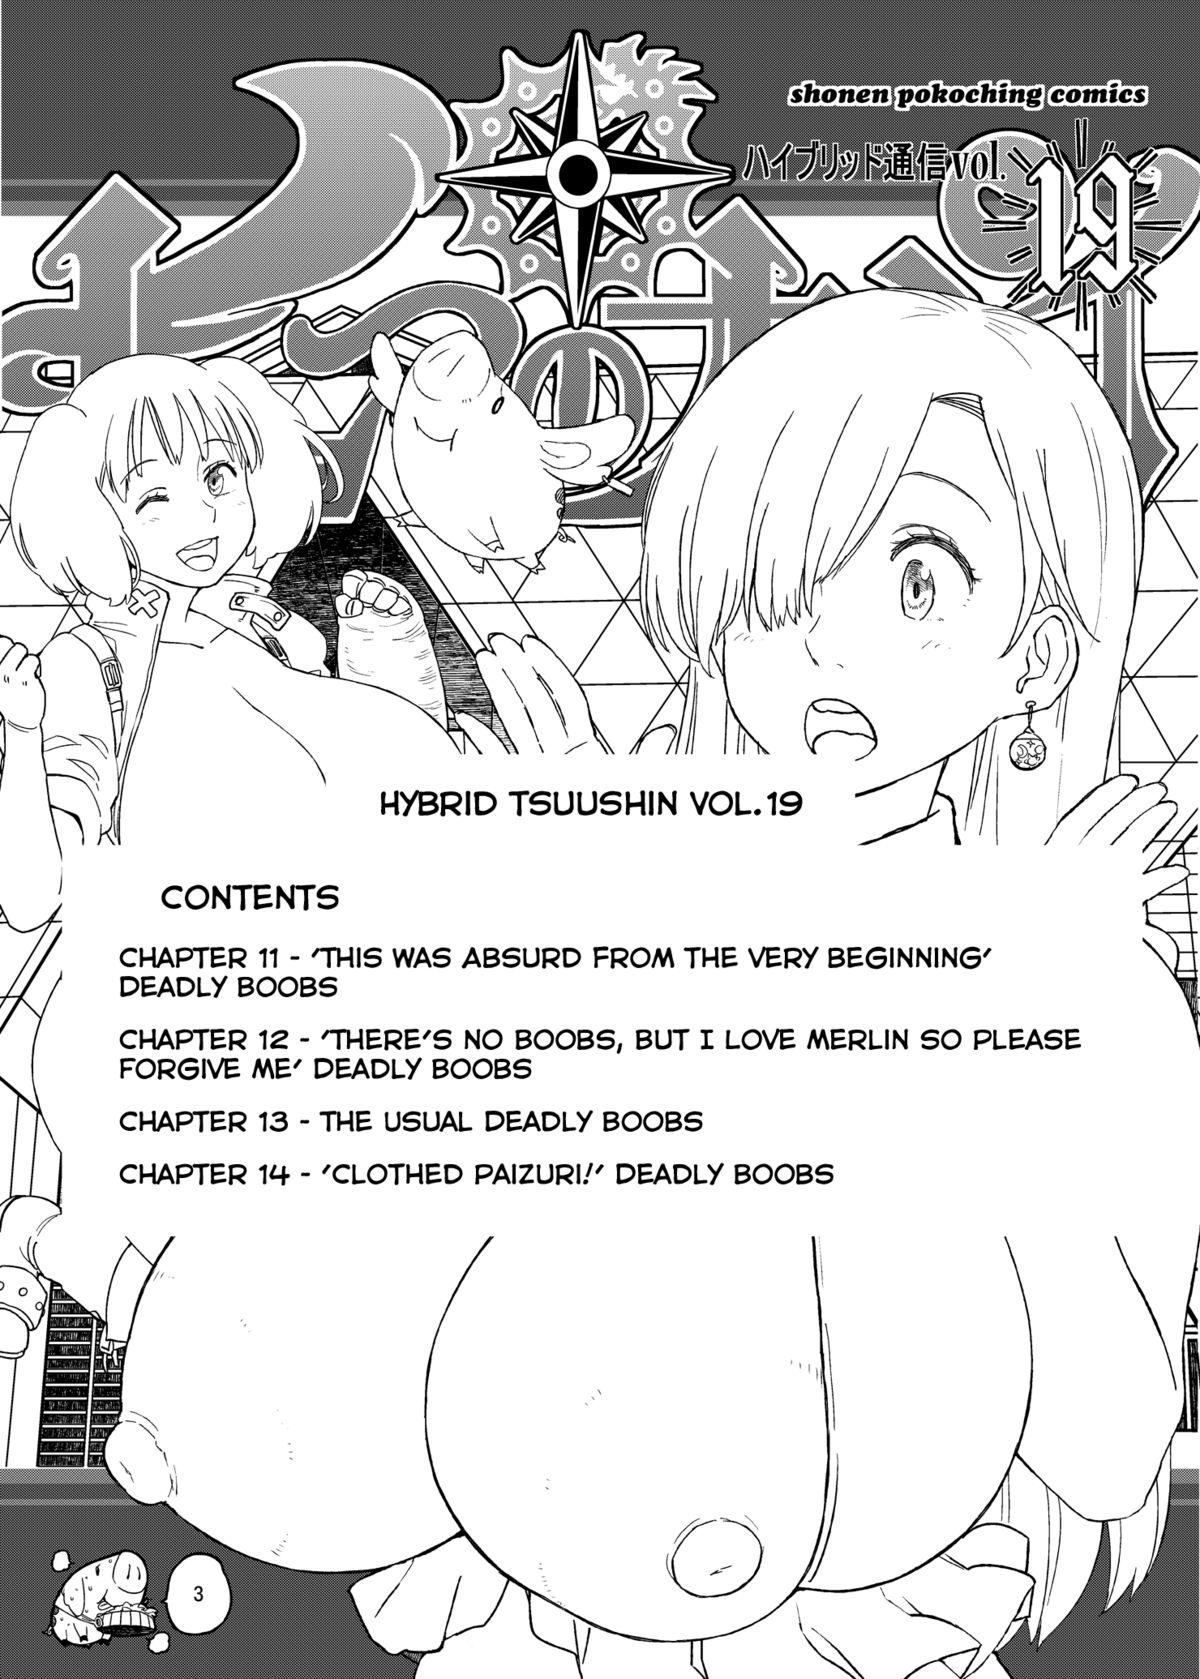 Camgirl Hybrid Tsuushin vol. 19 - Nanatsu no taizai Softcore - Page 3